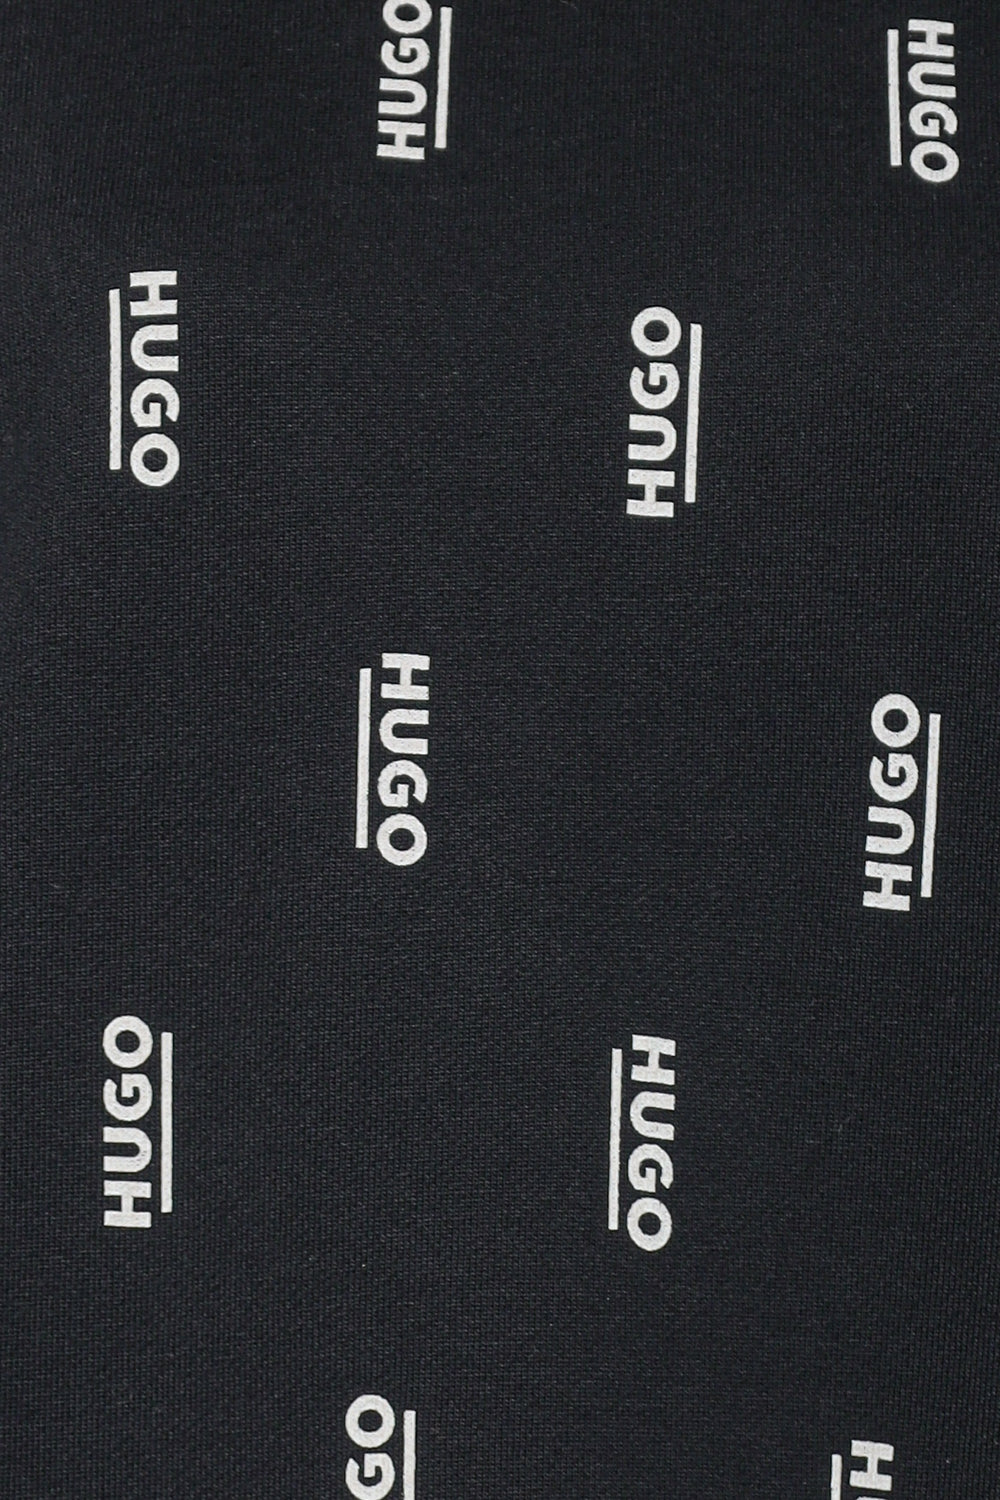 Pulover negru - detaliu logo